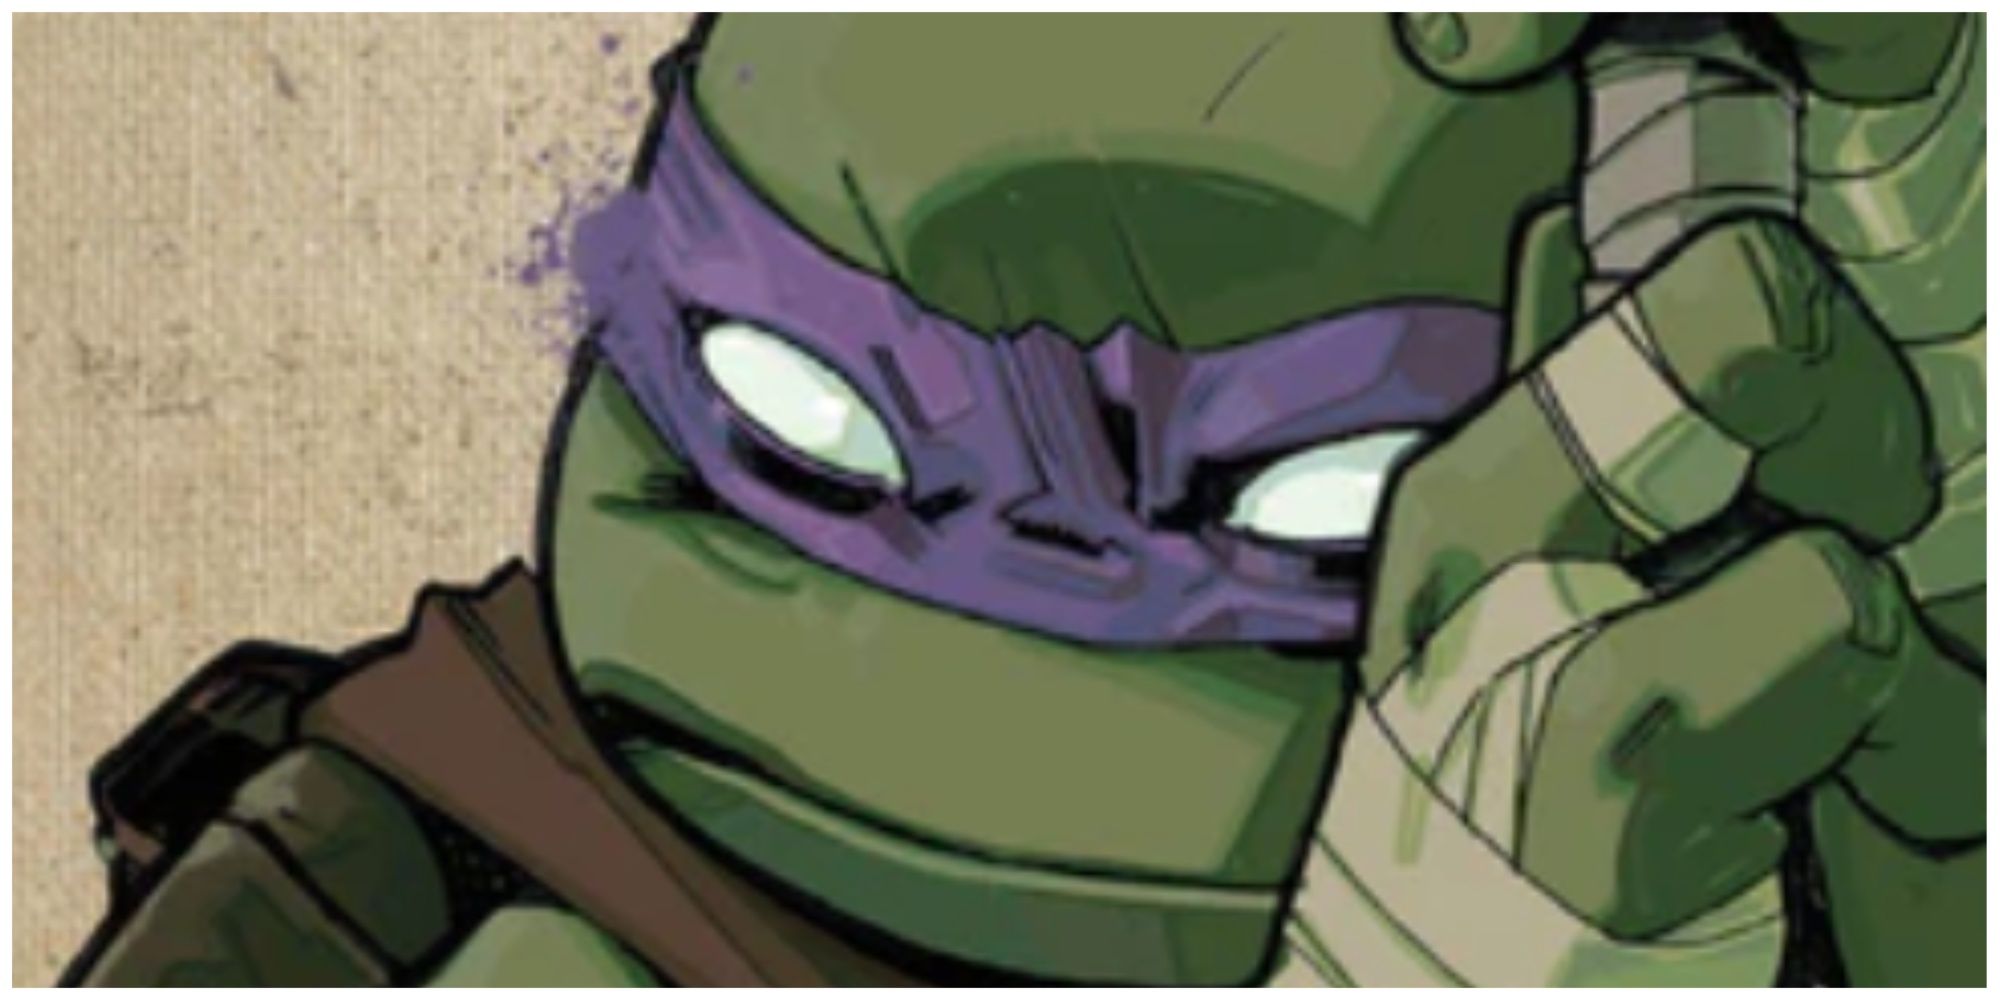 Donatello in IDW comic cover